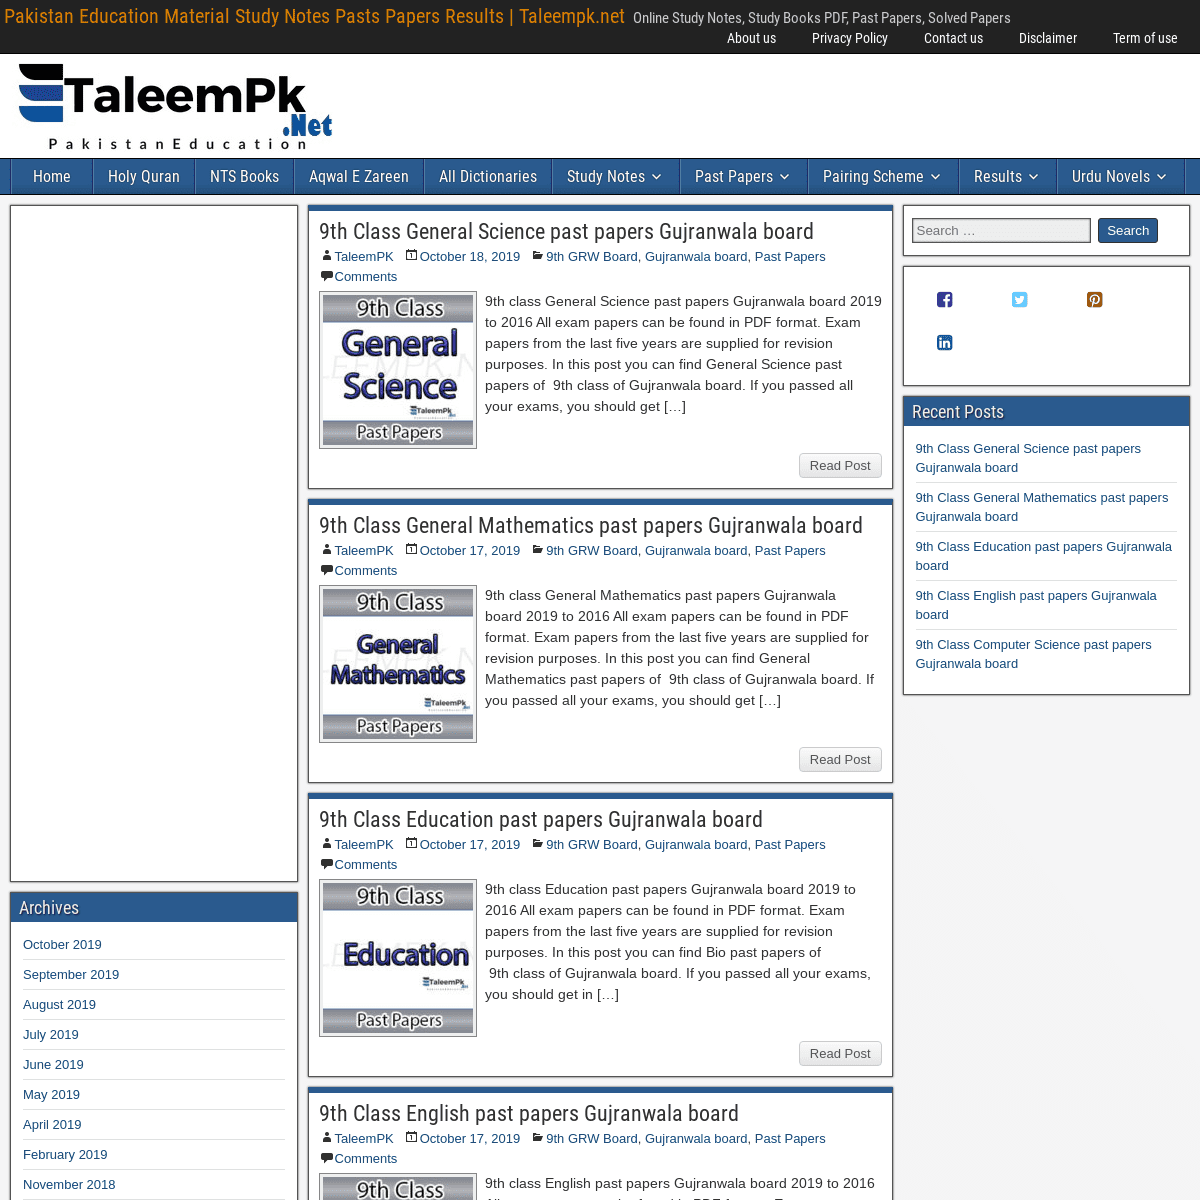 A complete backup of taleempk.net